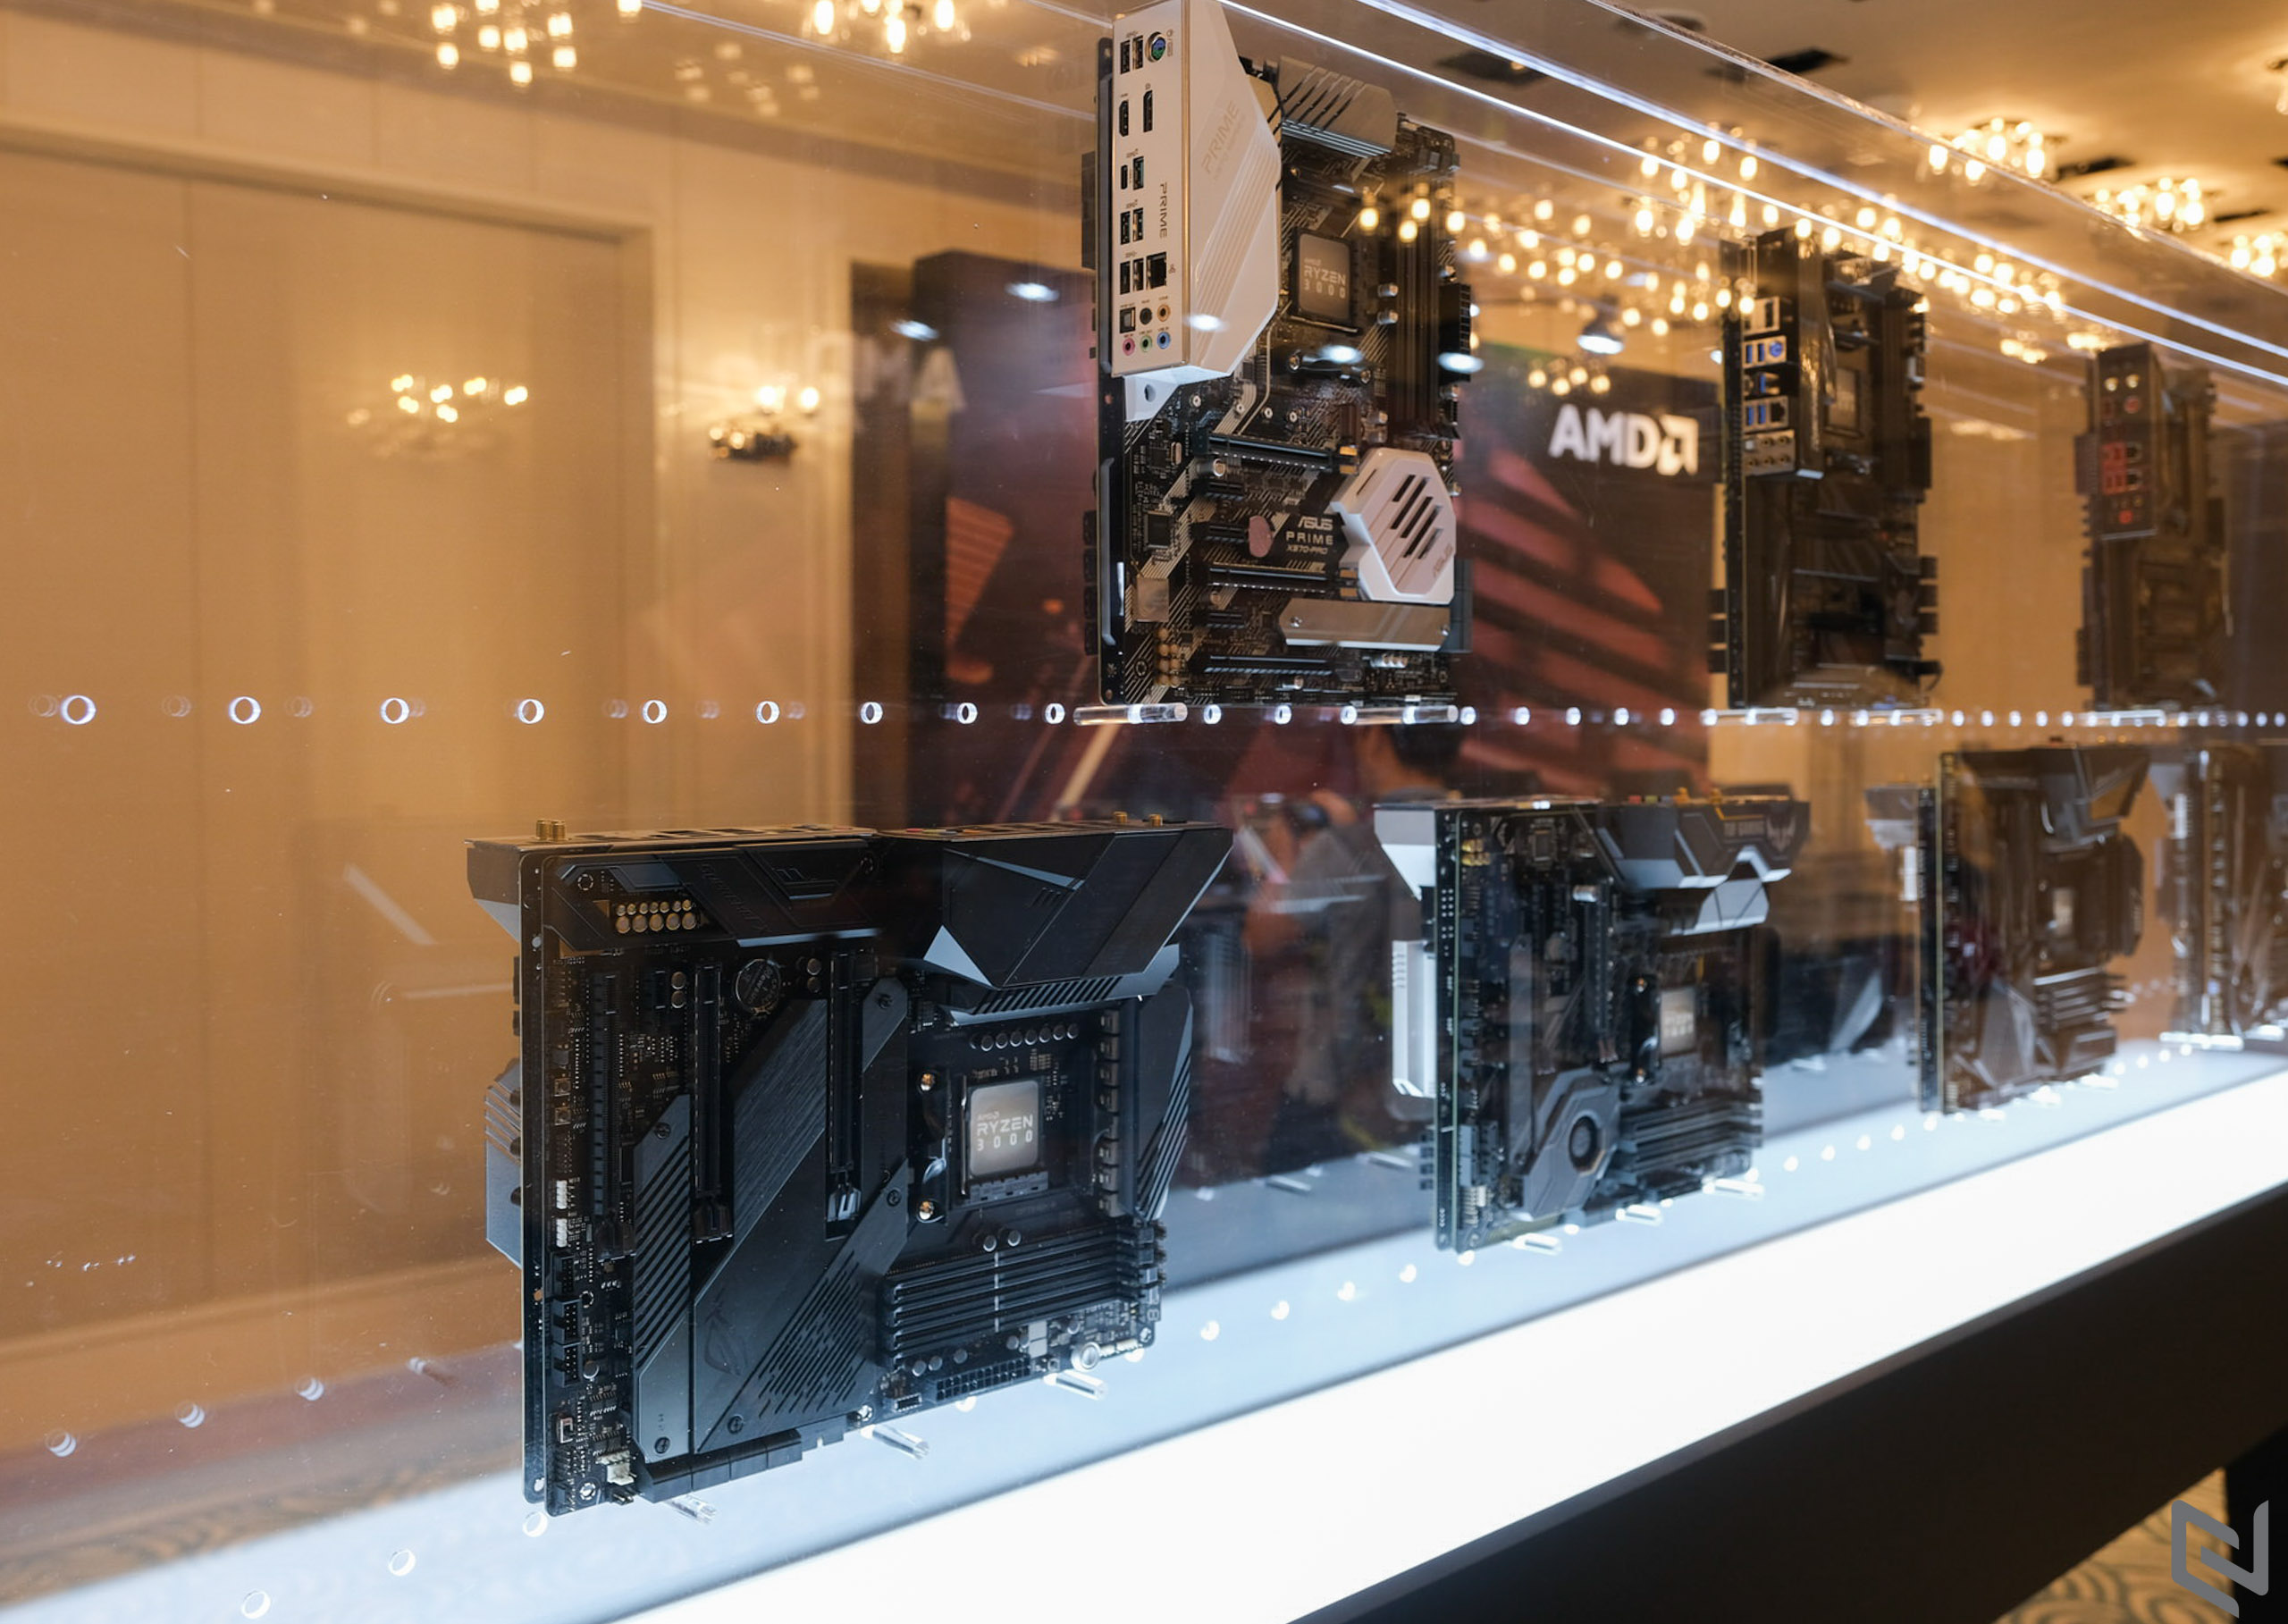 AMD giới thiệu Ryzen thế hệ 3 với CPU 12 nhân đầu tiên, giao tiếp PCIe 4.0 tại Computex 2019, giá từ 329 USD